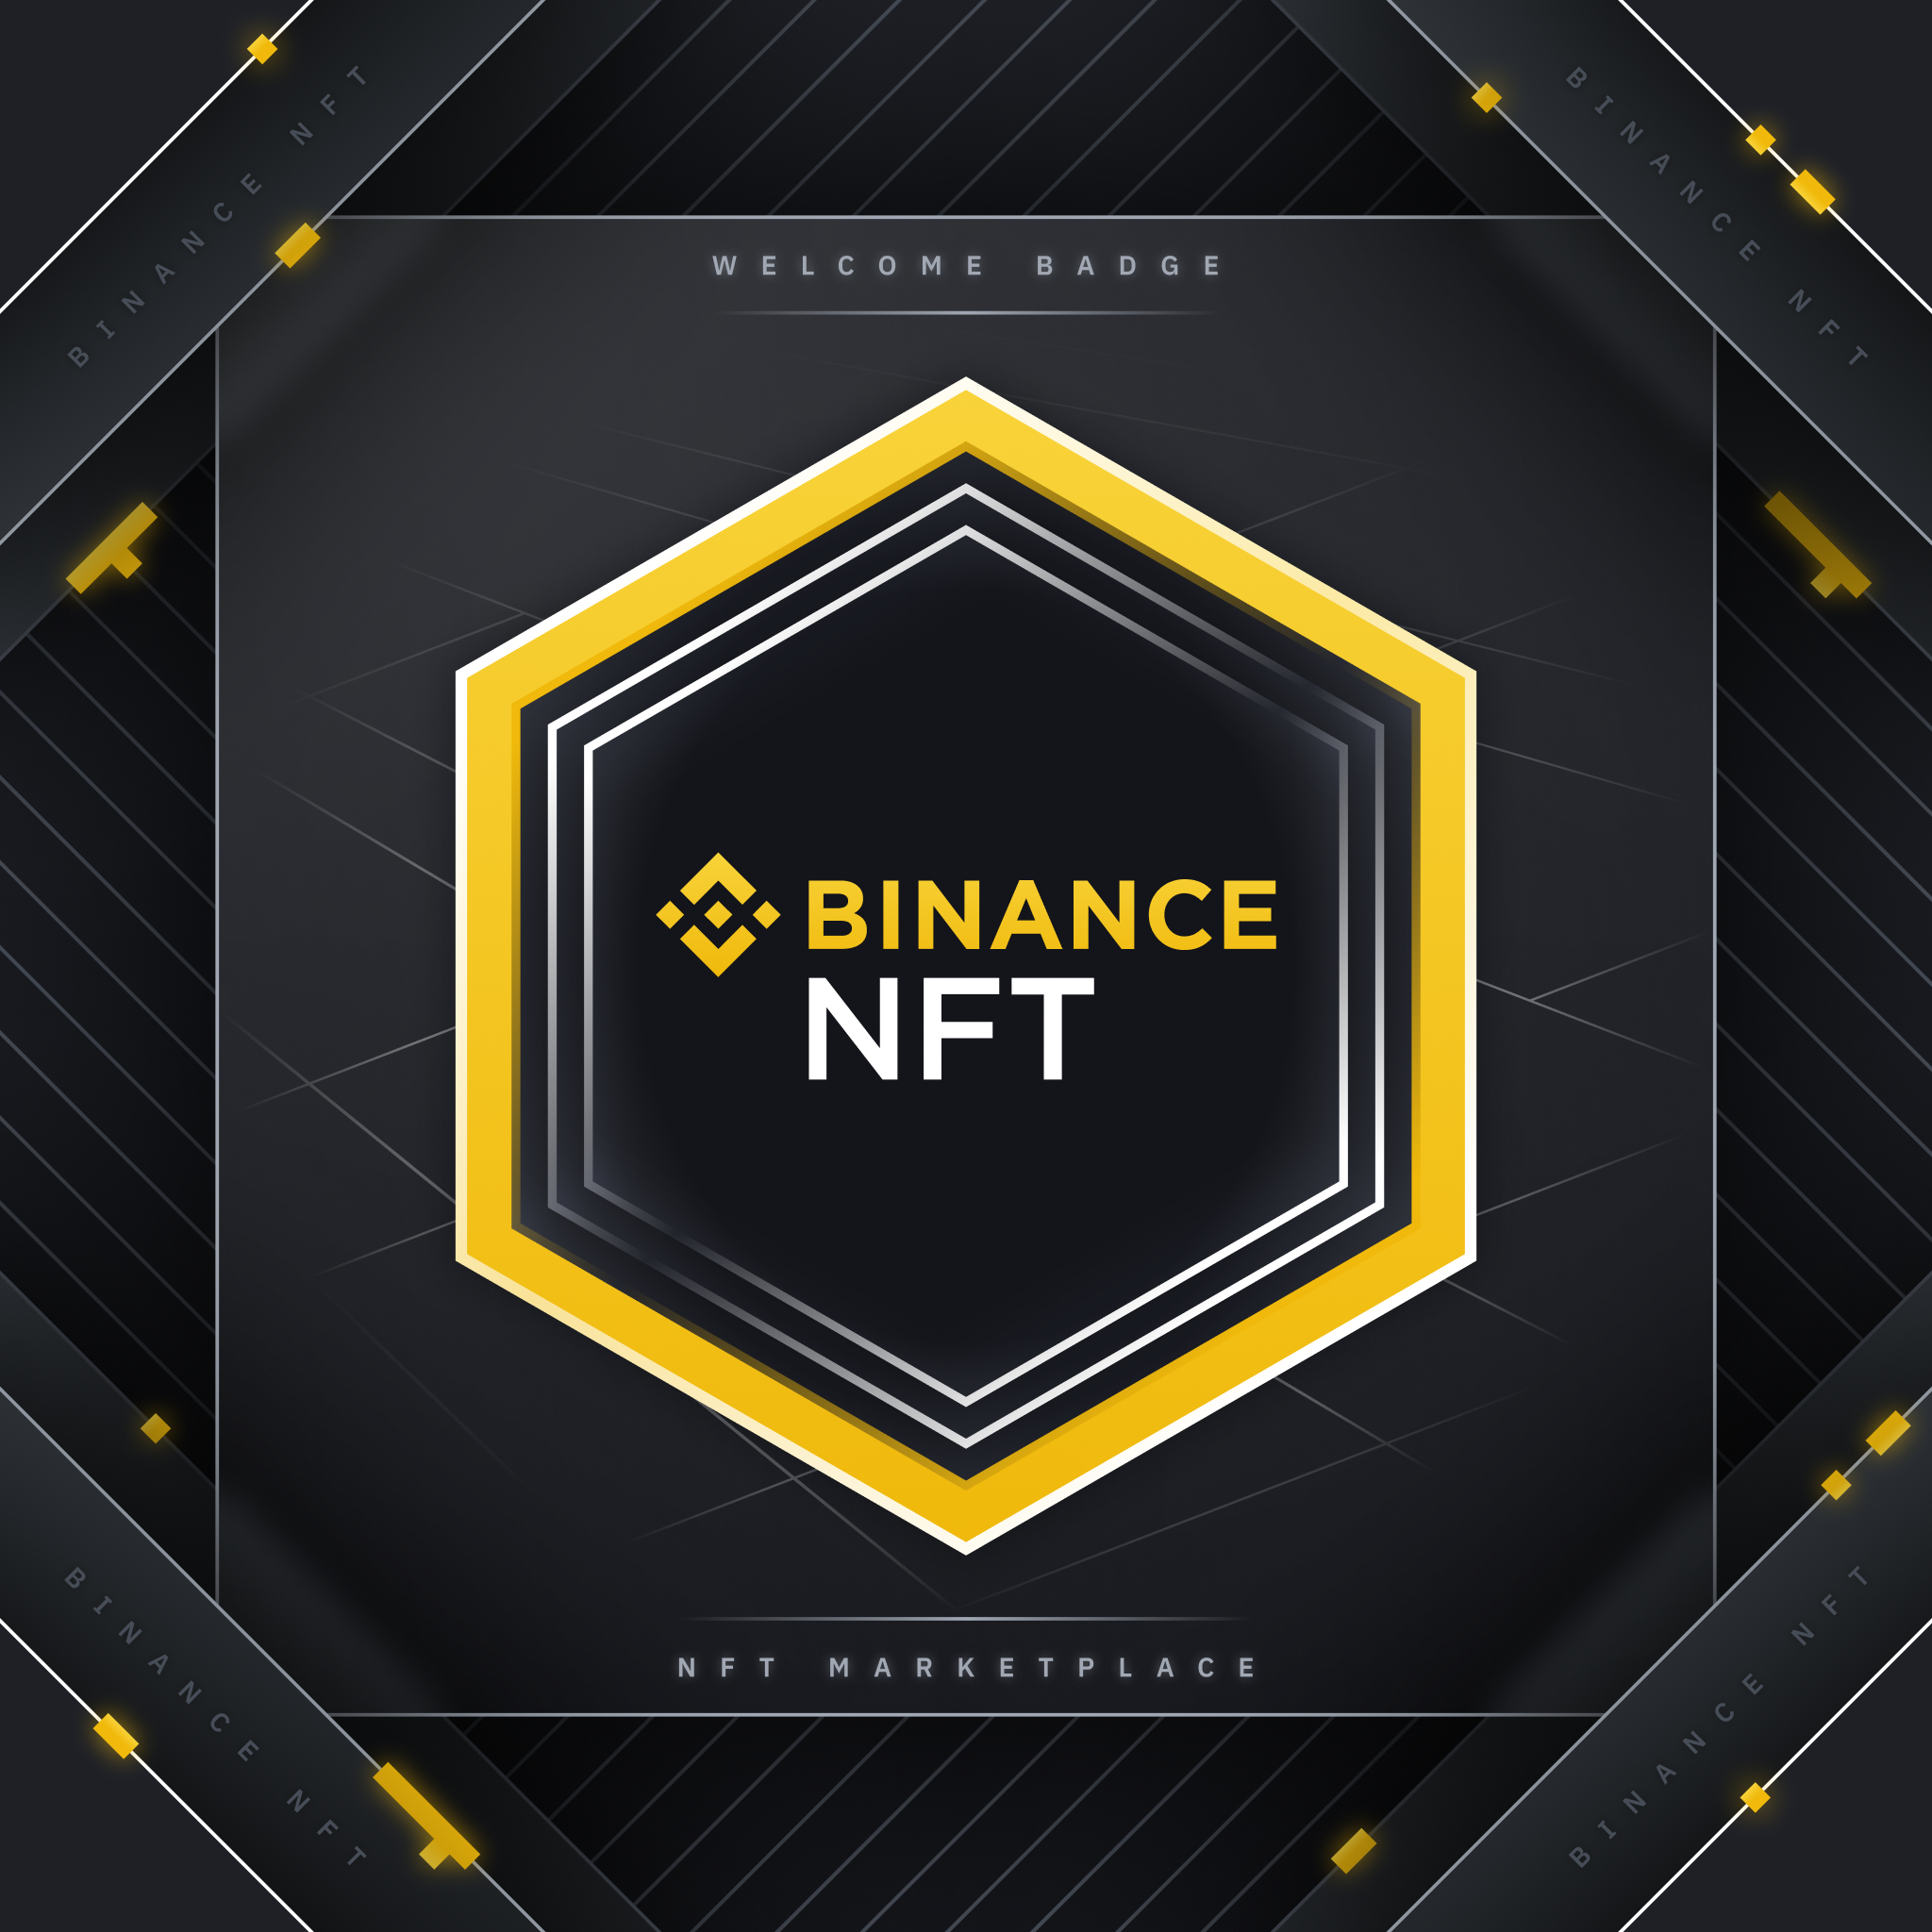 Binance NFT Welcome Badge | Binance NFT